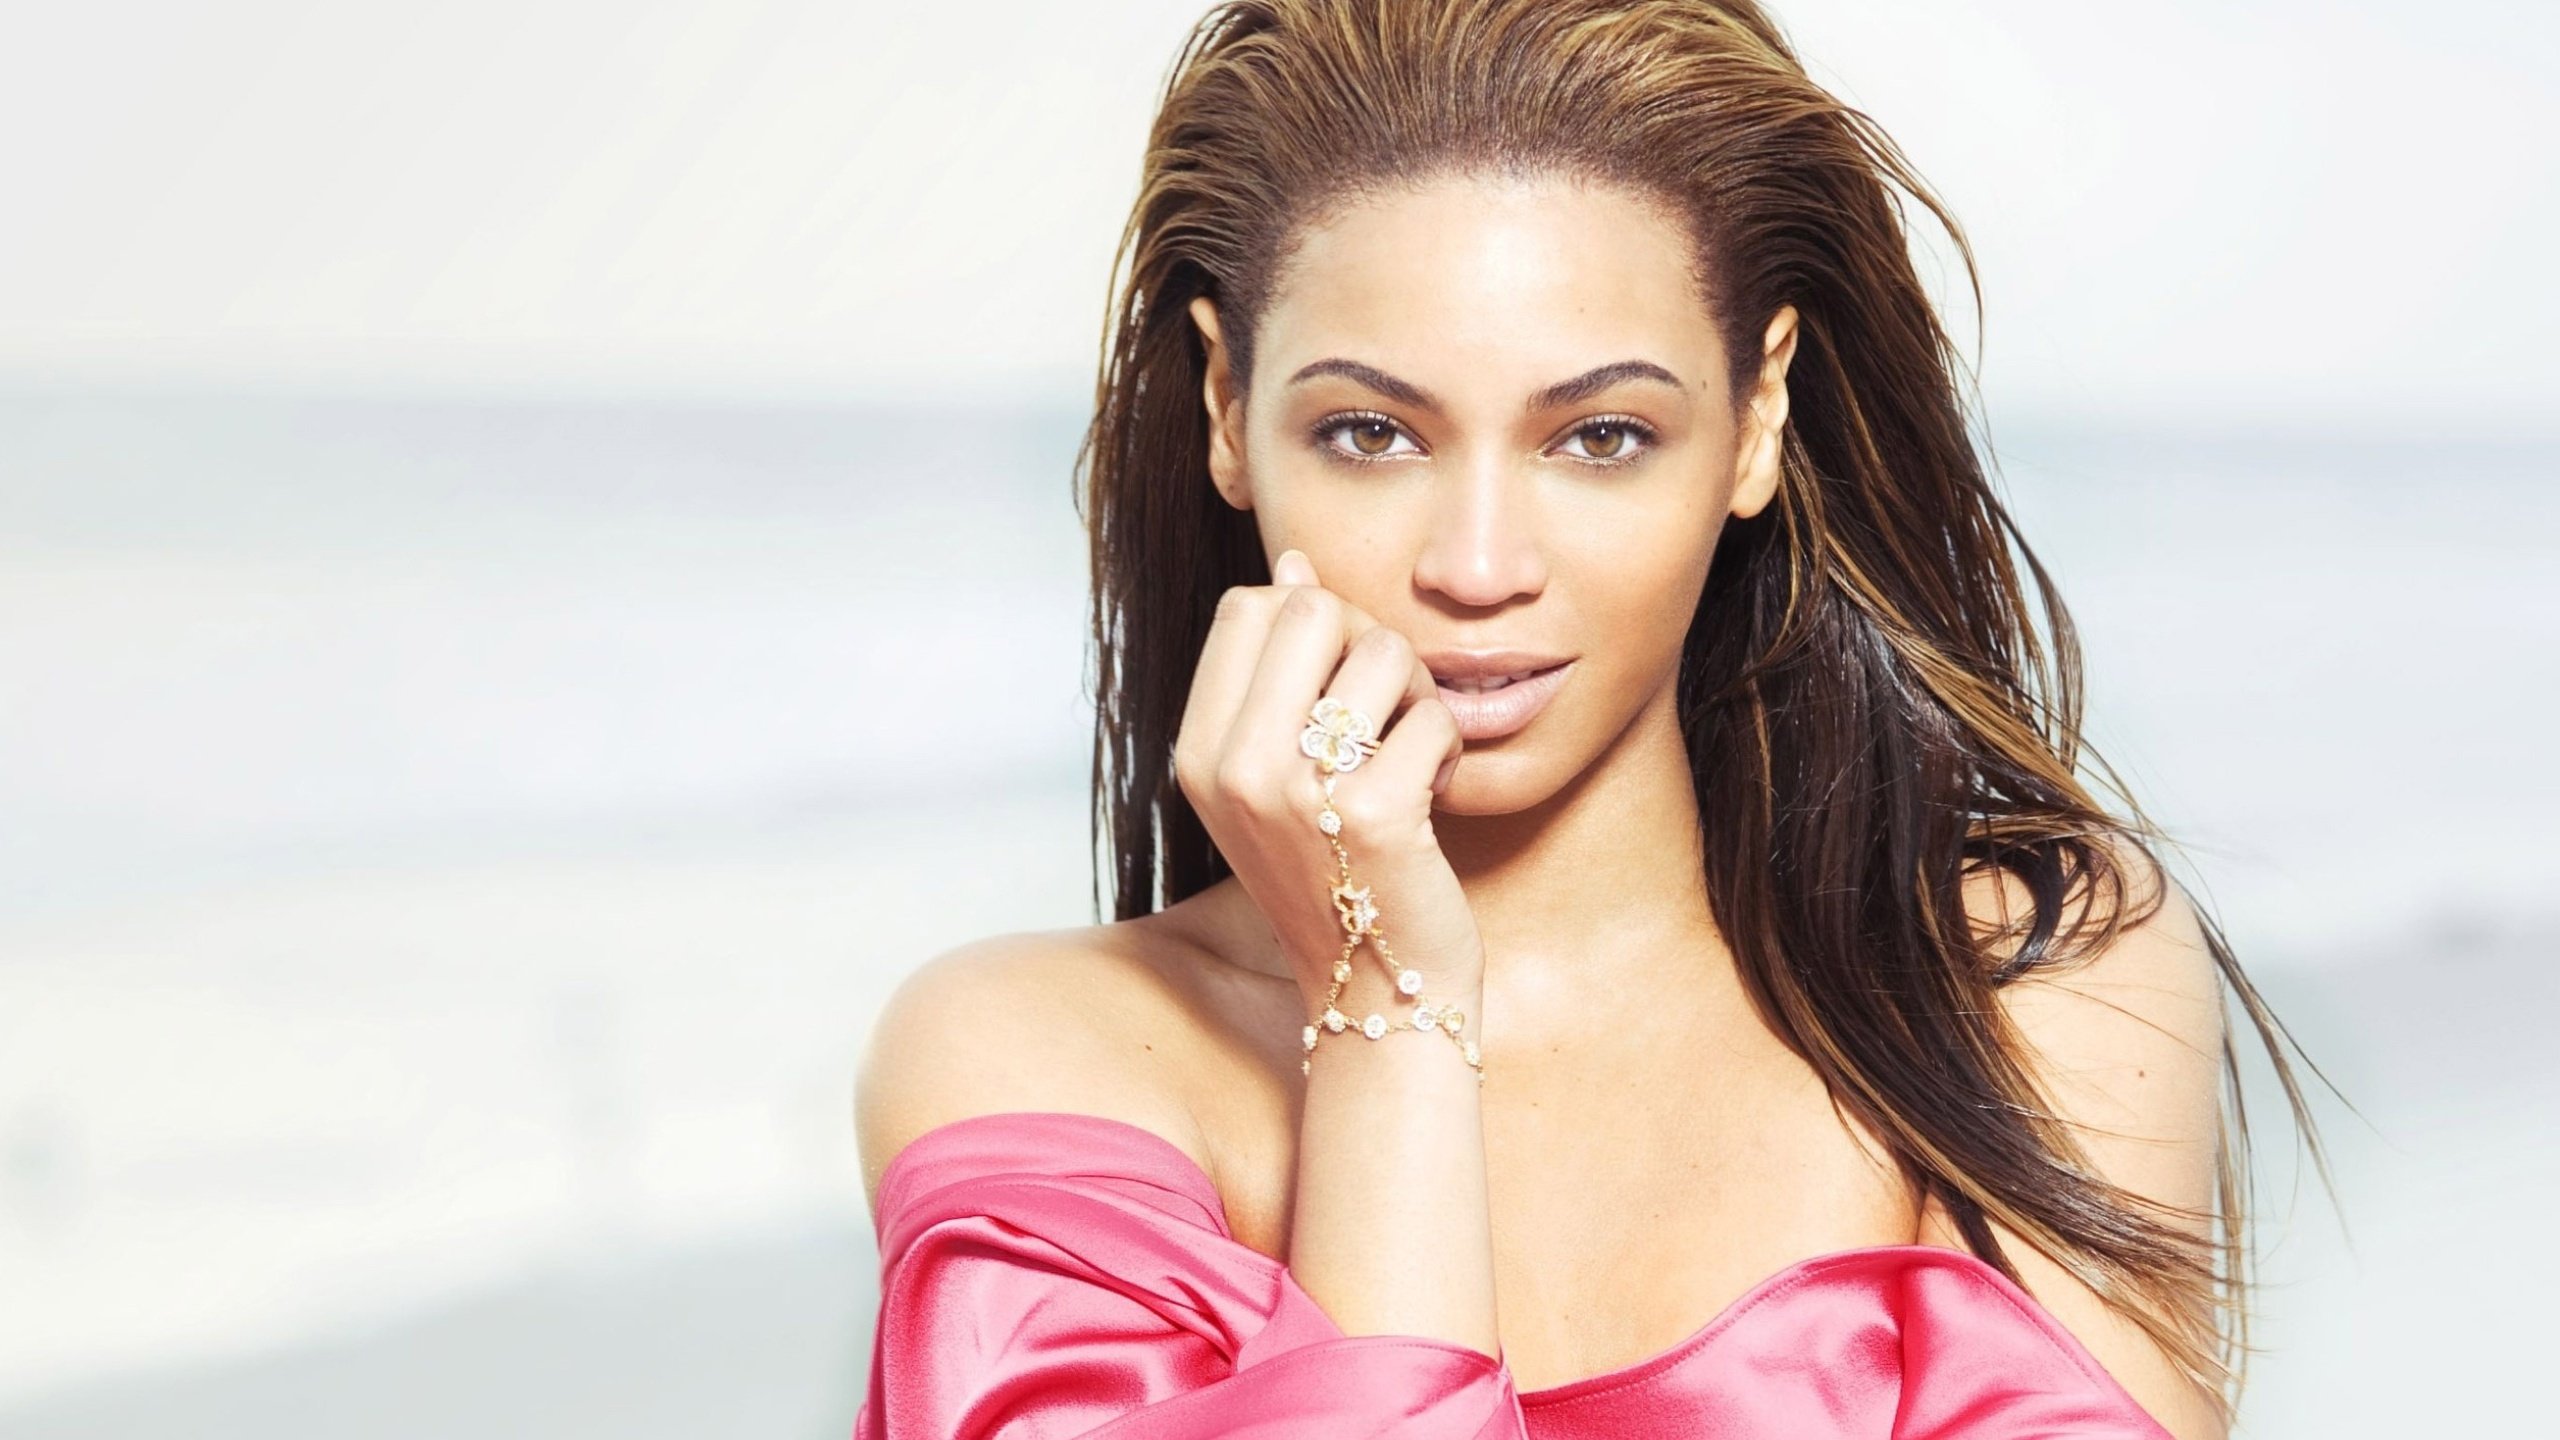 Best Beyonce wallpaper ID:375060 for High Resolution hd 2560x1440 desktop